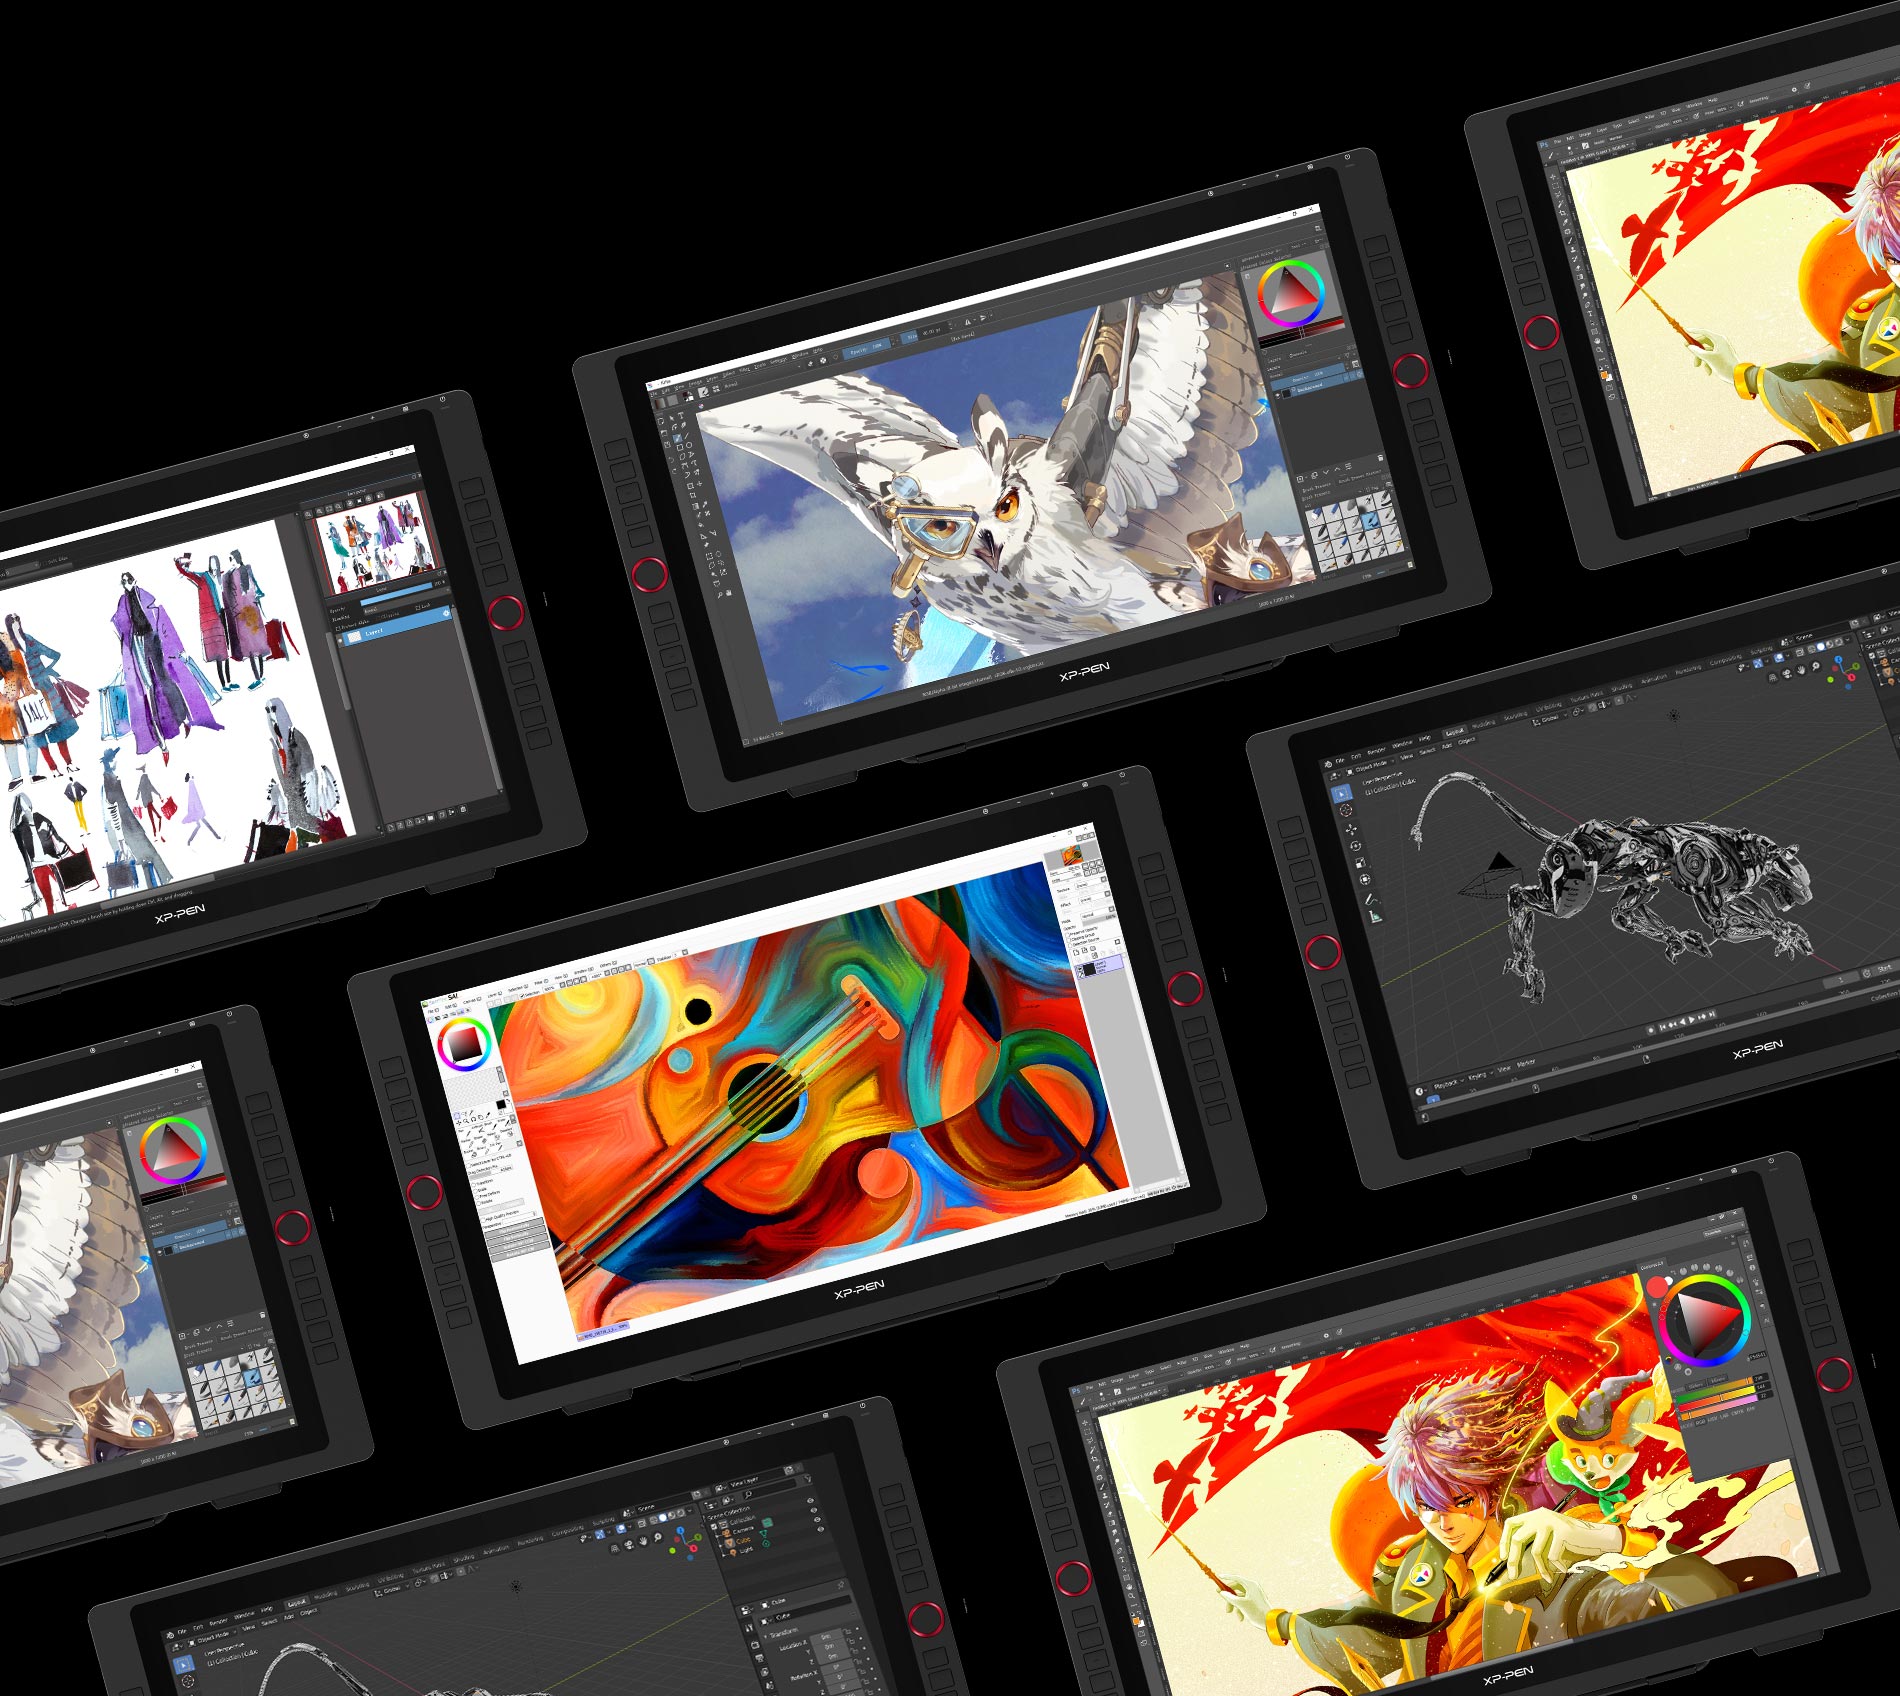  tablette écran graphique XP-Pen Artist 22R Pro compatible avec Windows 7/8/10, Mac  OS et fonctionne avec la plupart des principaux logiciels de dessin